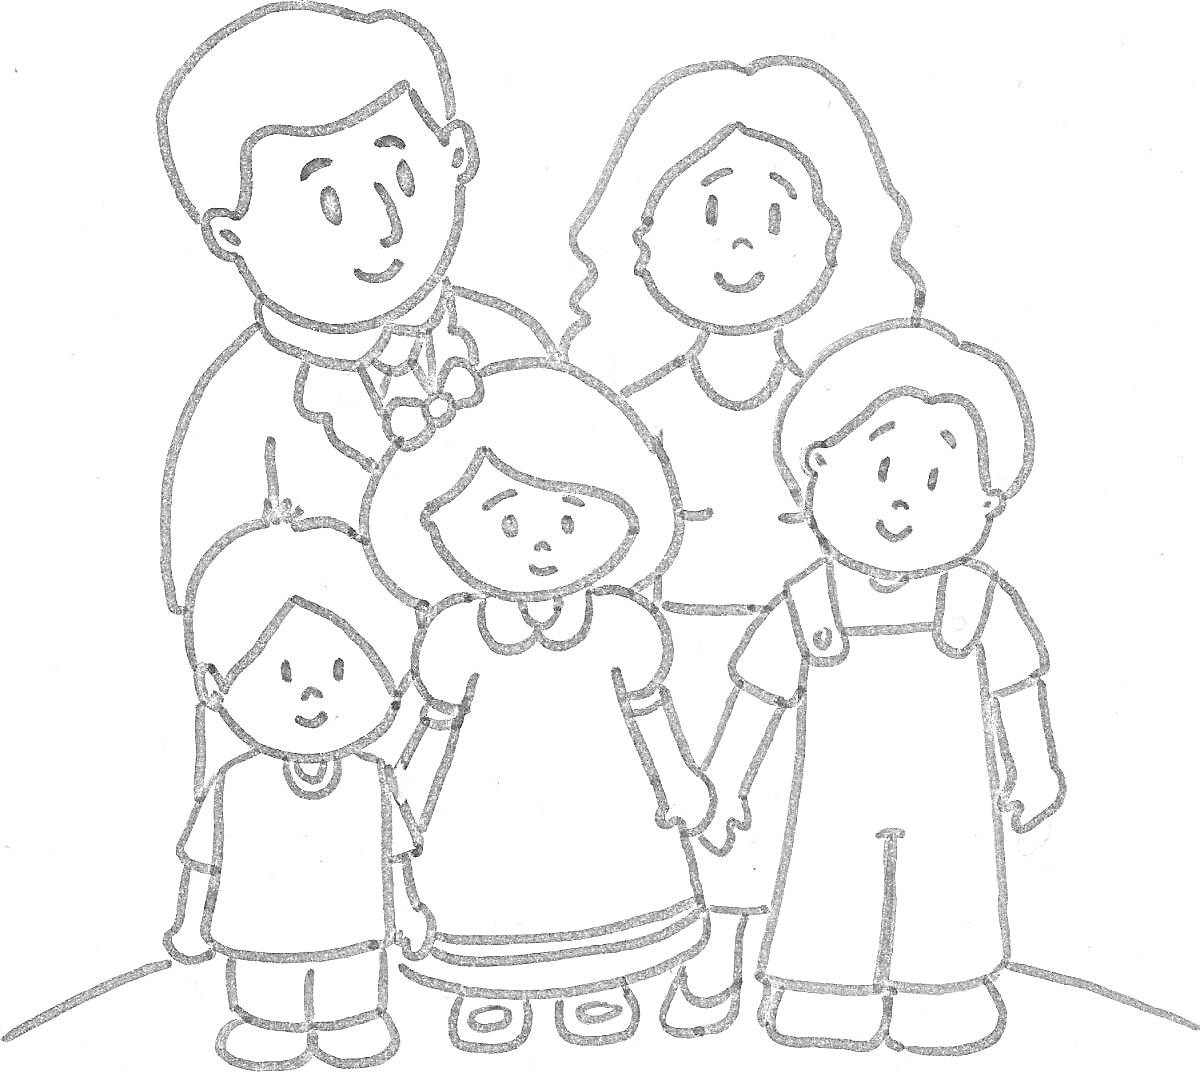 Вся семья вместе: папа, мама, сын, дочь и младший сын